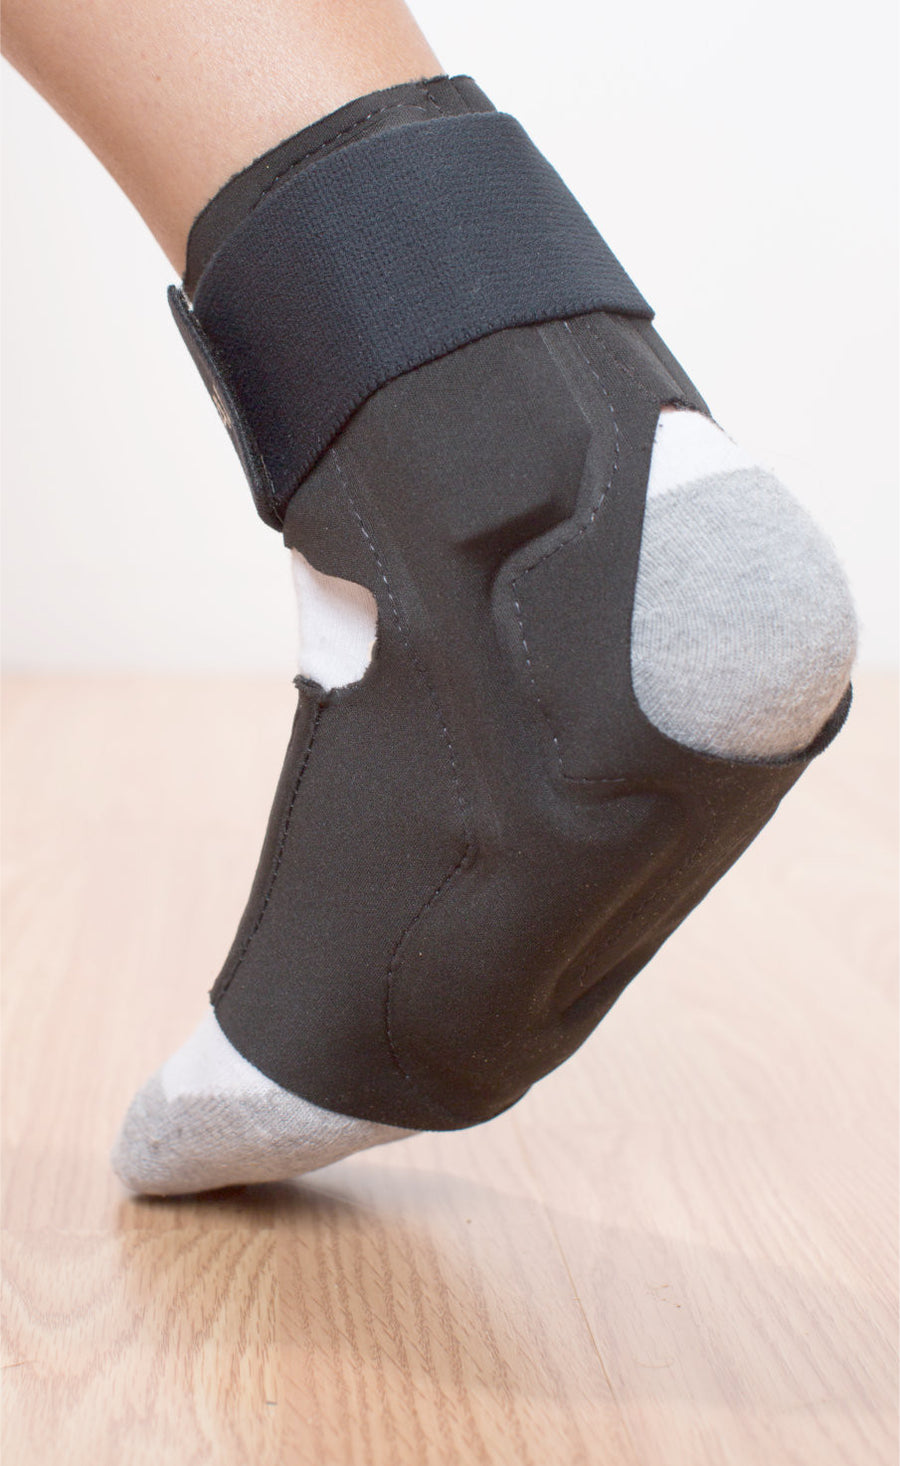 Sumiwish Heel Sleeves, 2PCS Breathable Heel Cushion, India | Ubuy